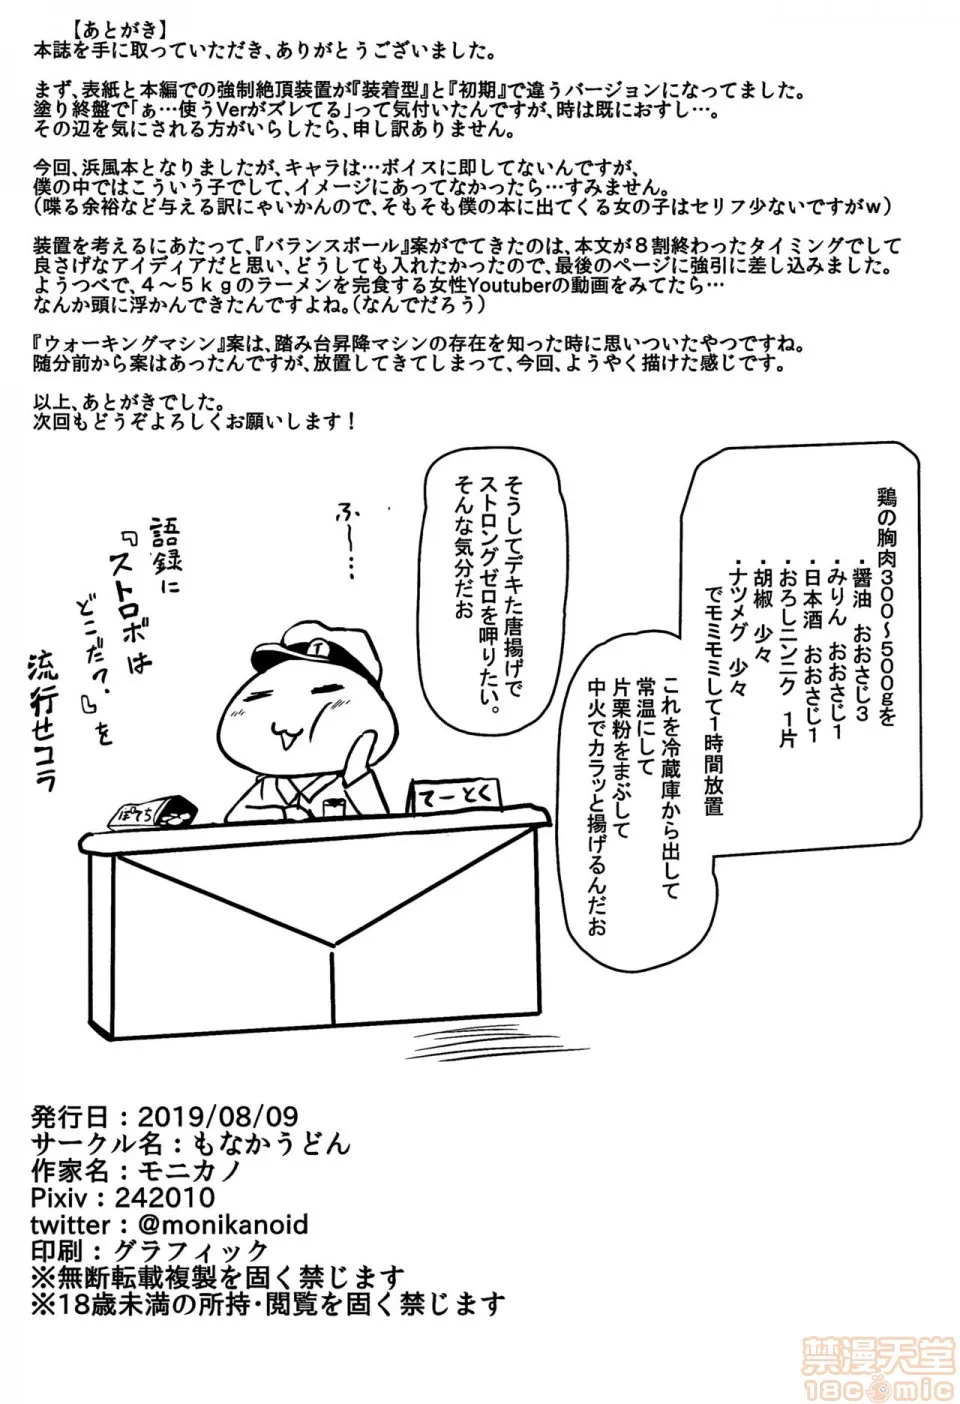 18禁全彩漫画之(C96)駆逐舰浜风寻问调书(舰队これくしょん-舰これ-)